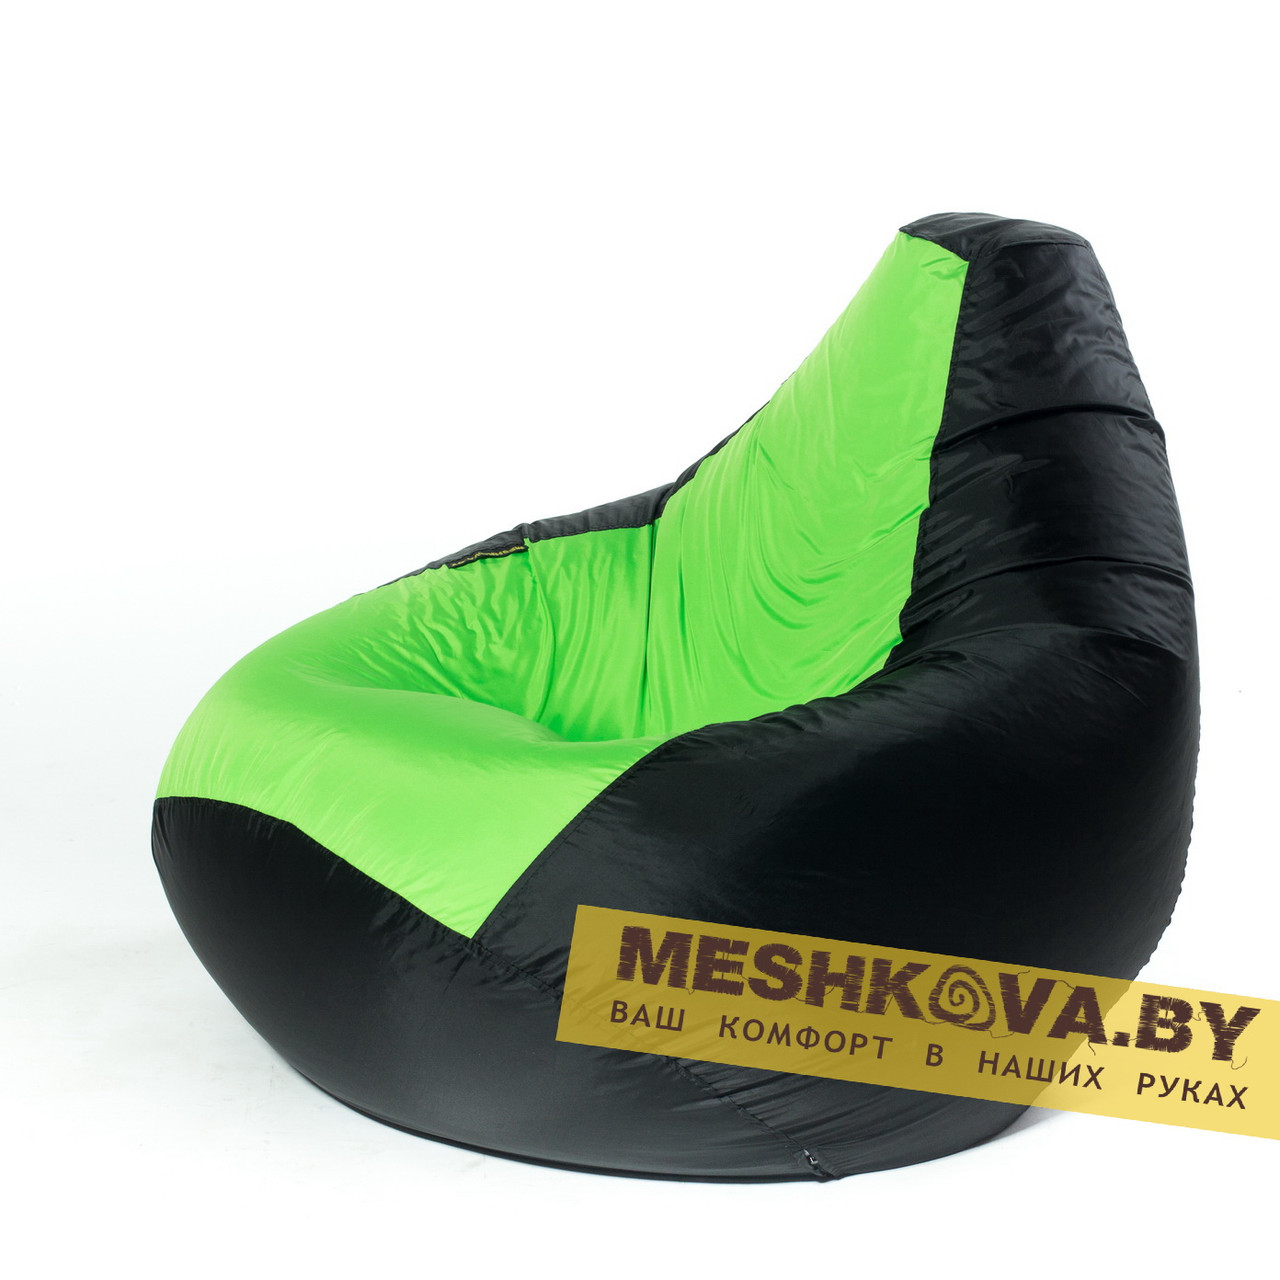 Кресло-груша Комбо Грин - XL, фото 1